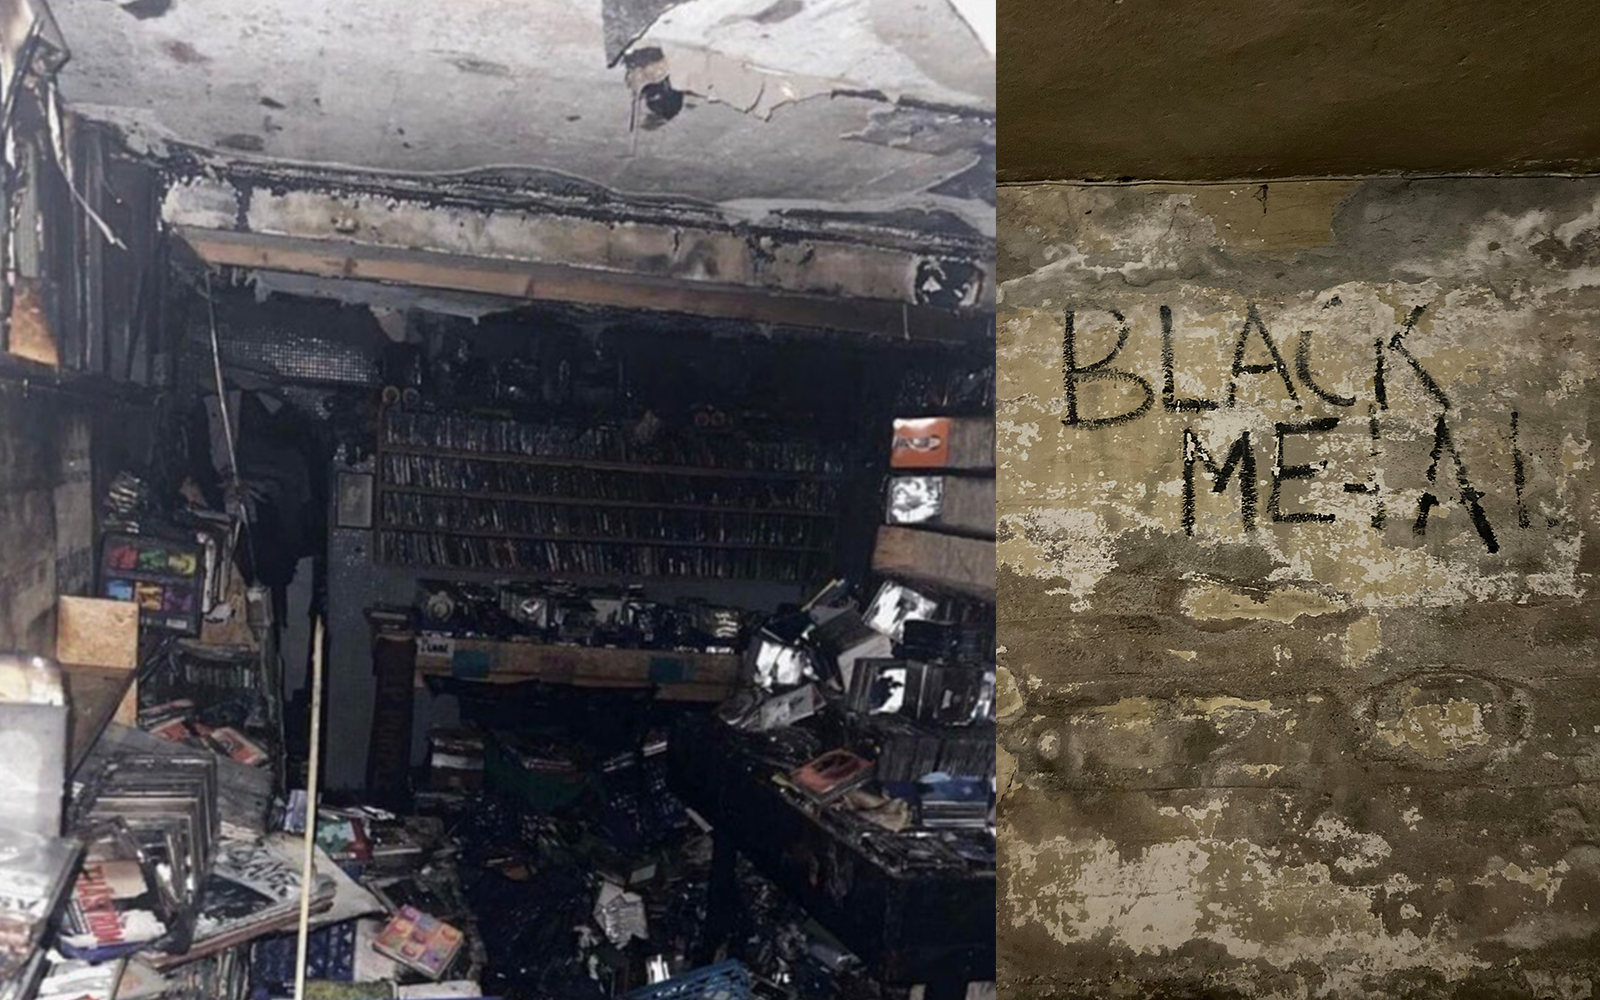 Neseblod Records (бывшая Helvete) в Осло сильно пострадала от пожара, история блэк-метала уничтожена